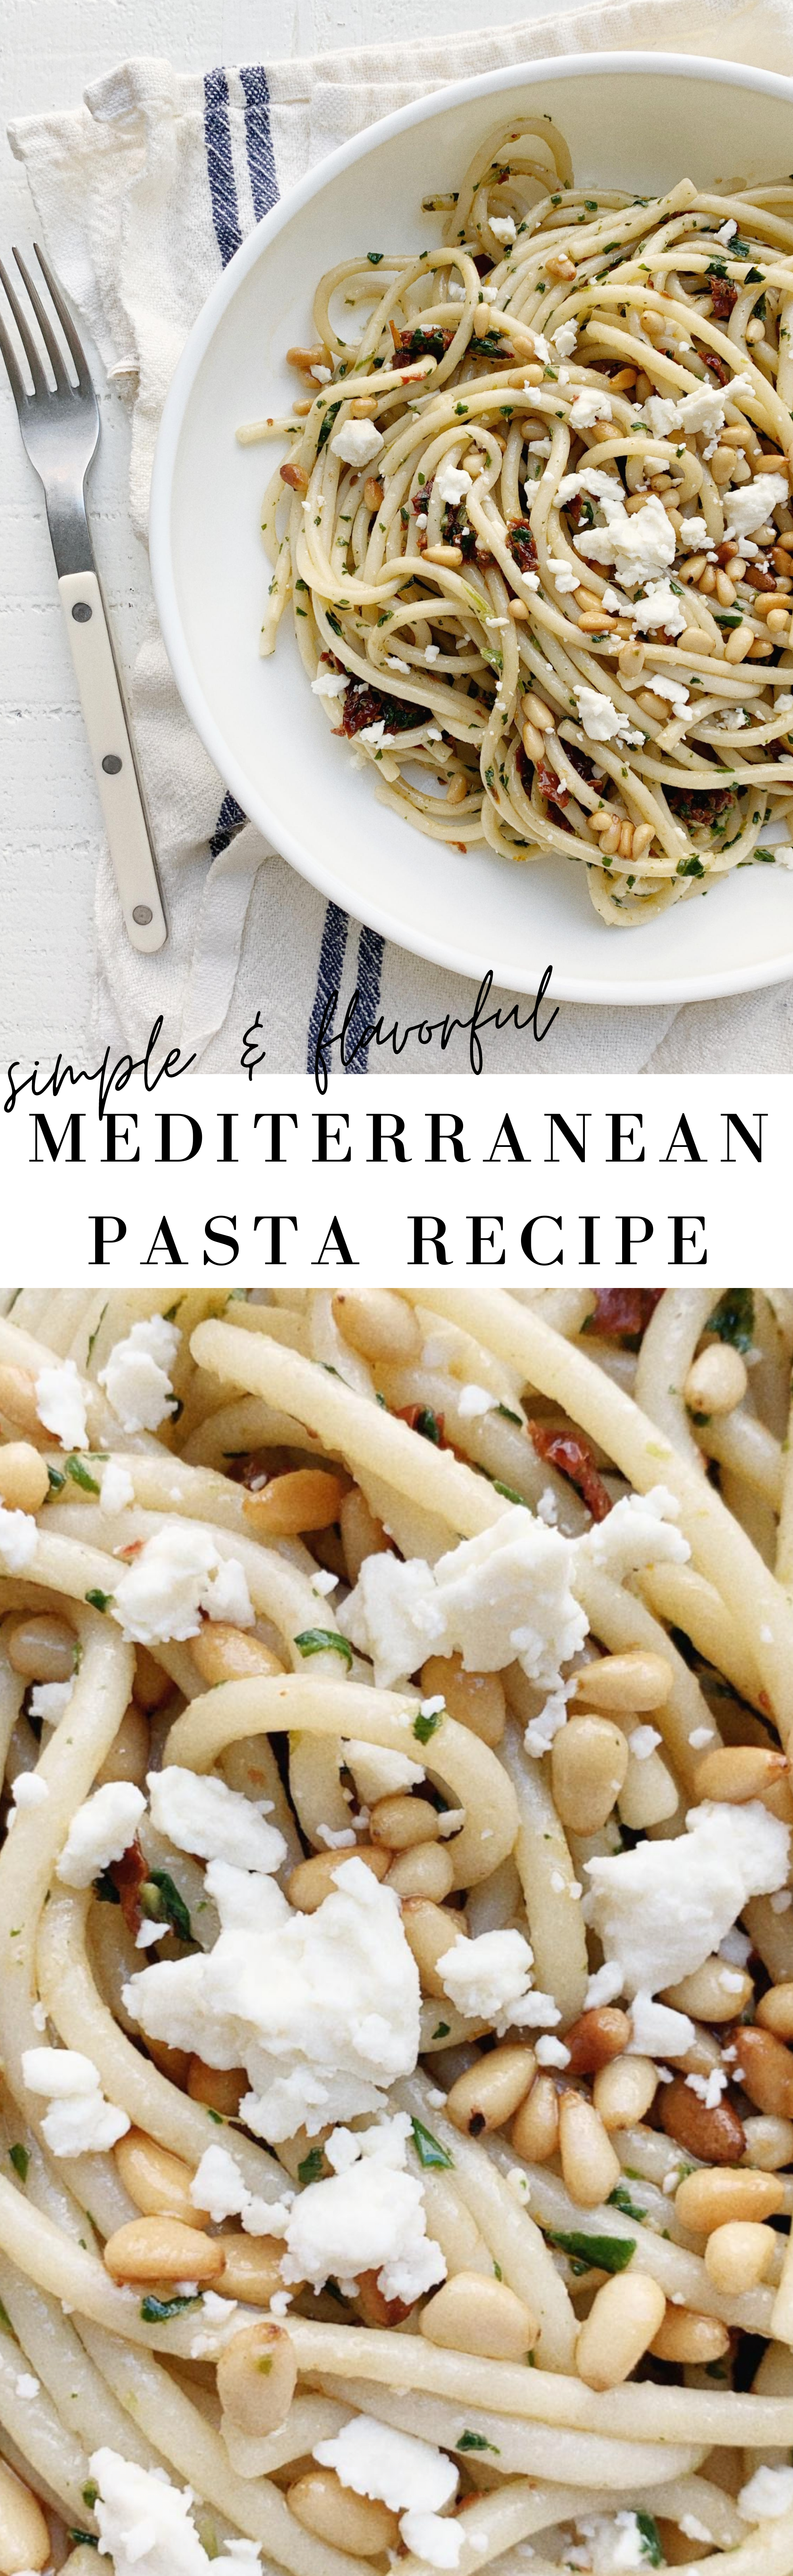 Mediterranean pasta recipe